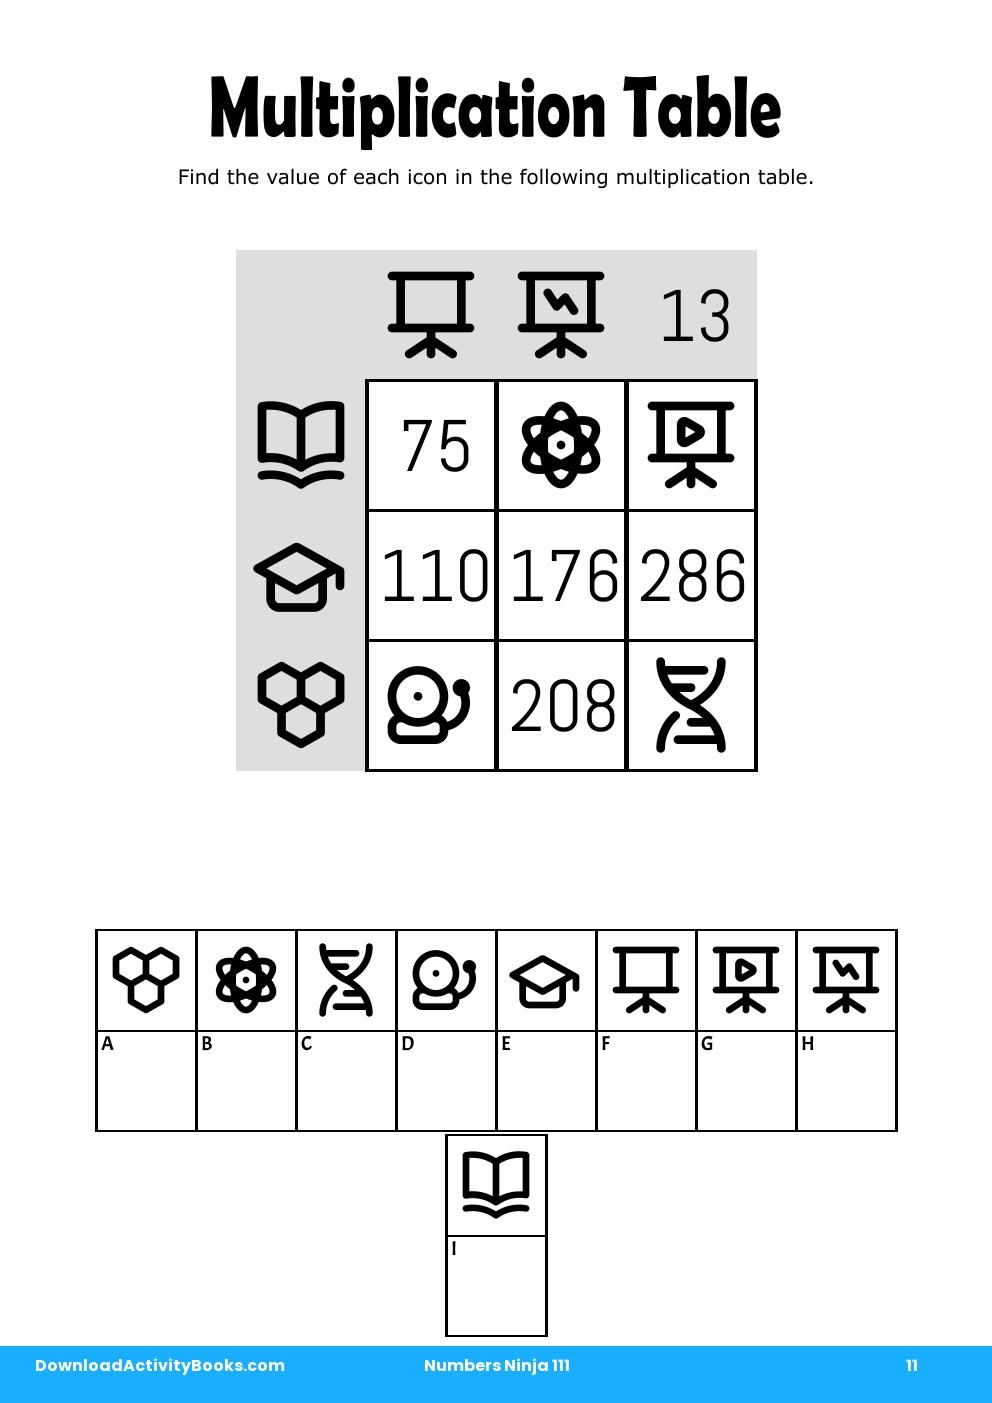 Multiplication Table in Numbers Ninja 111